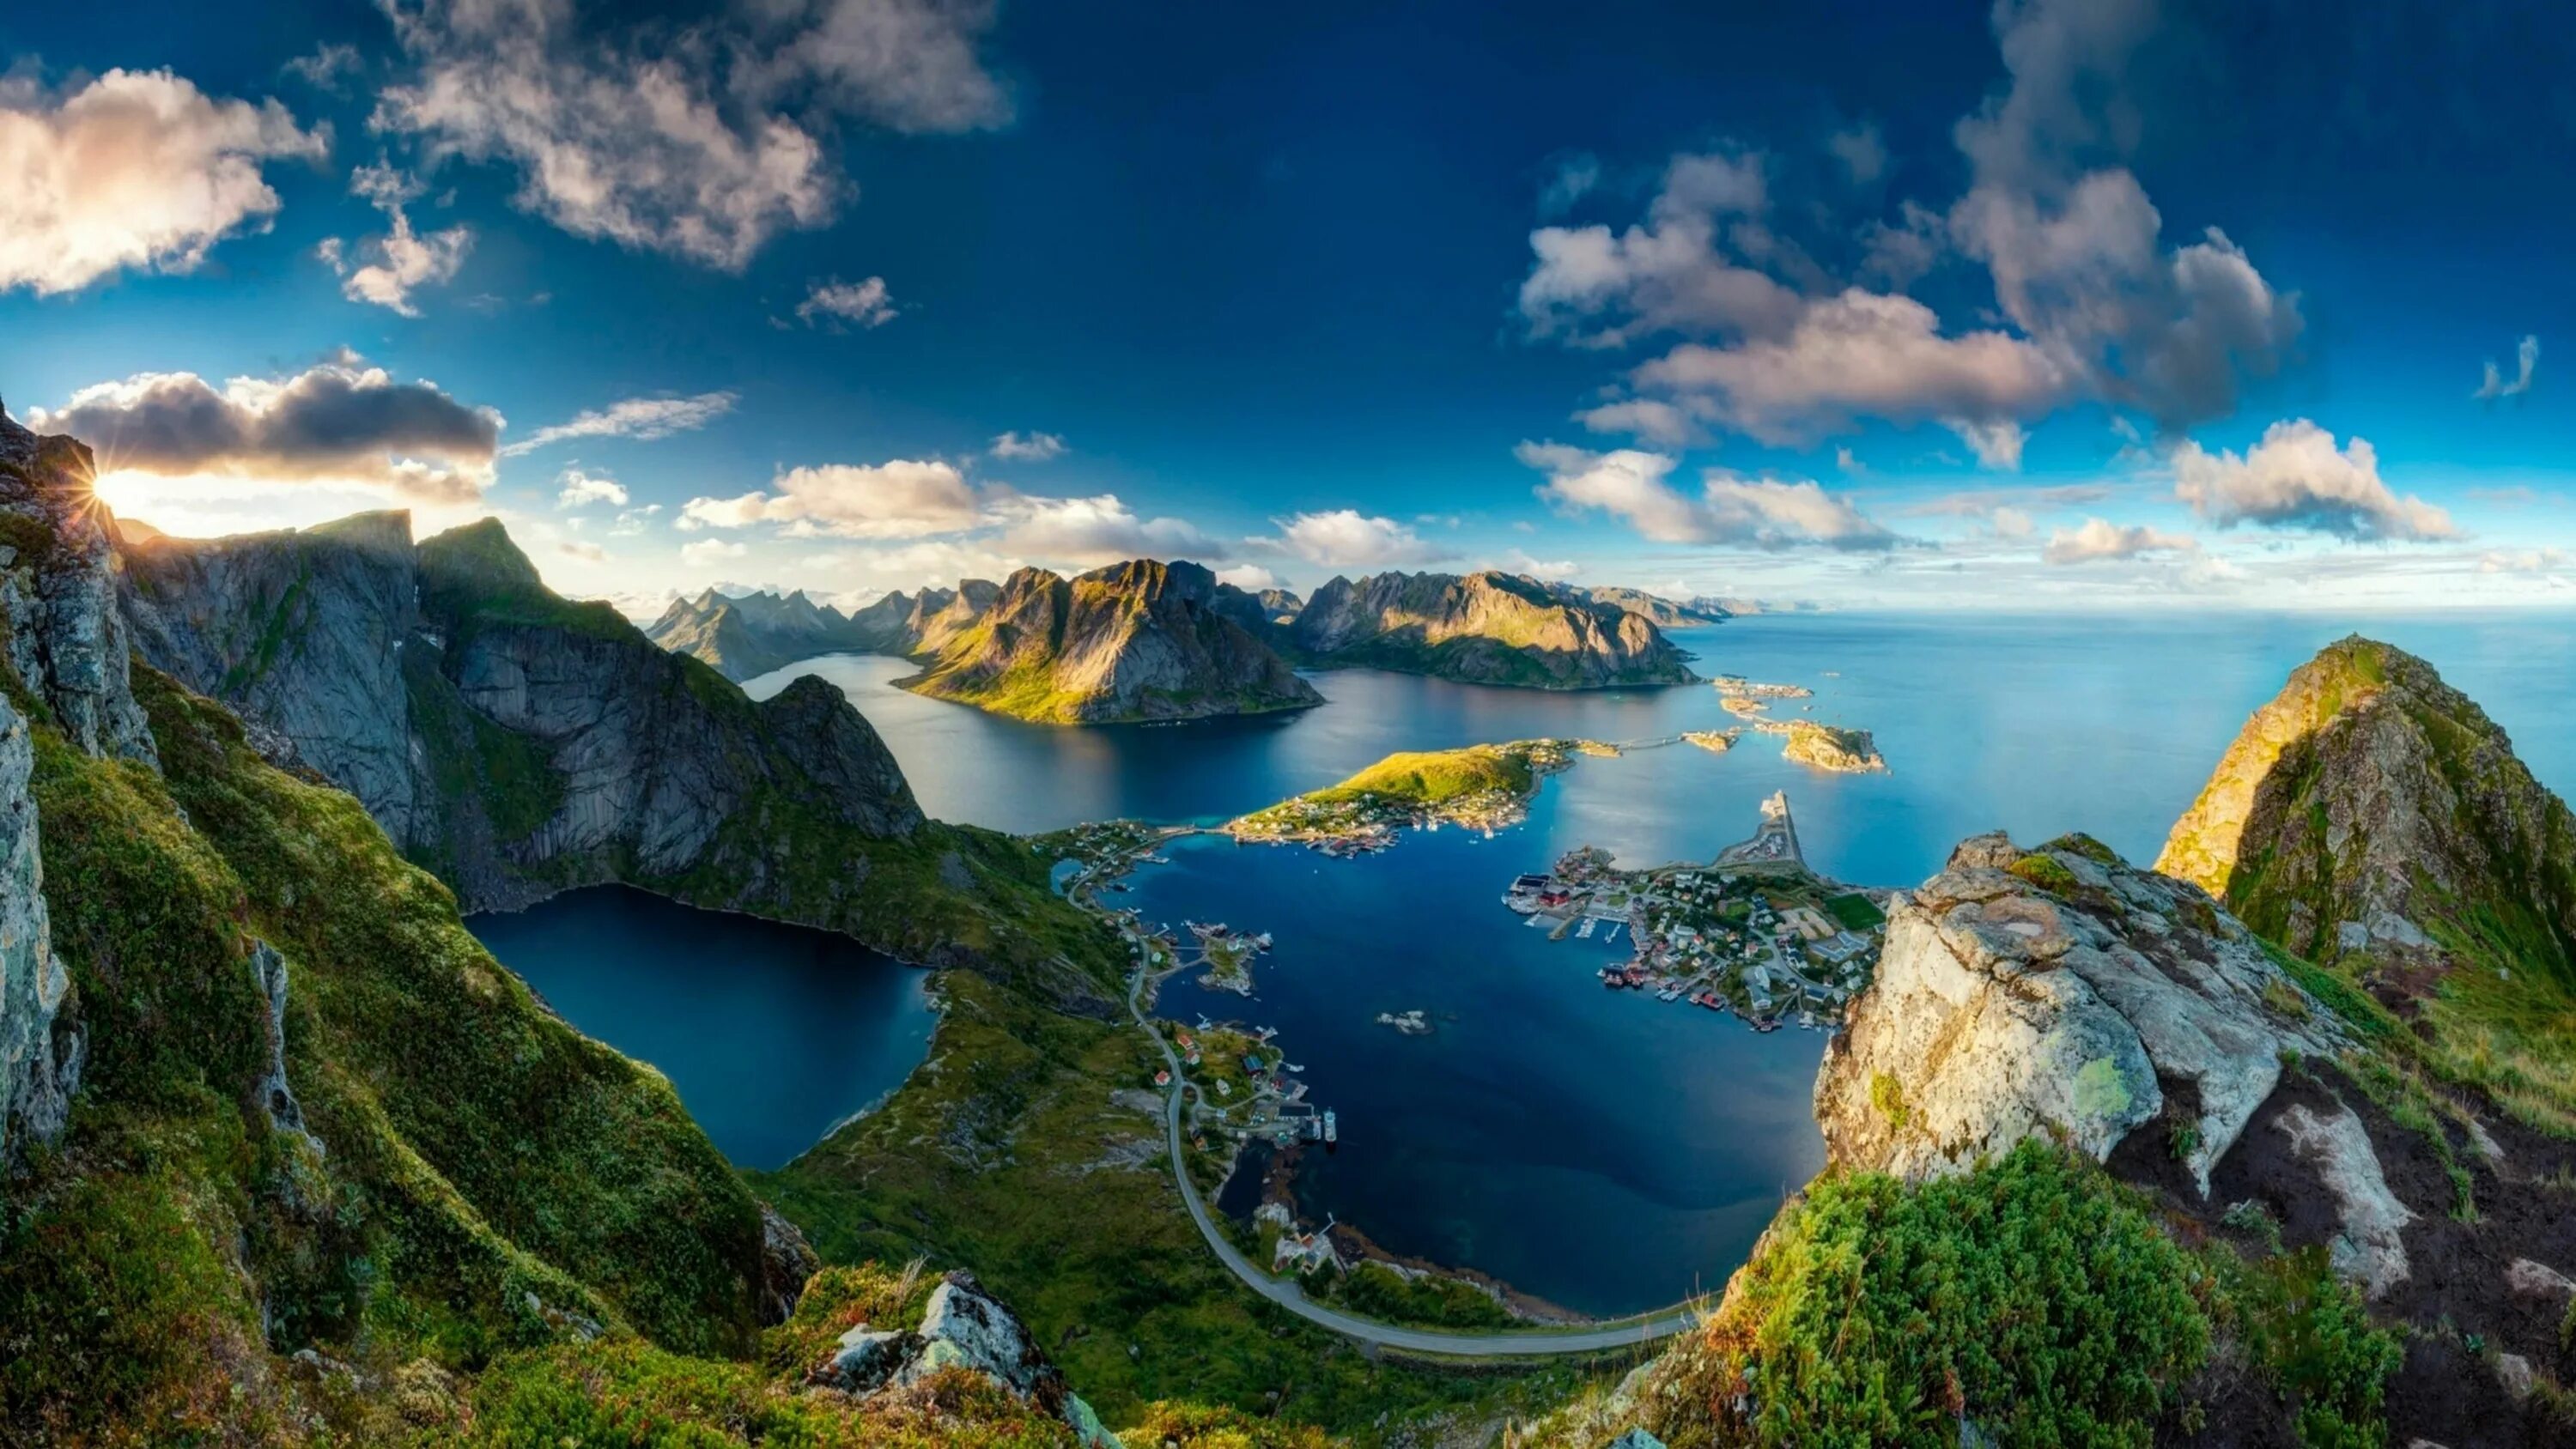 The view is beautiful. Лофотенские острова, Норвегия. Норвегия Лофотенские острова Reinebringen. Скандинавия фьорды. Норвежские фьорды панорама.